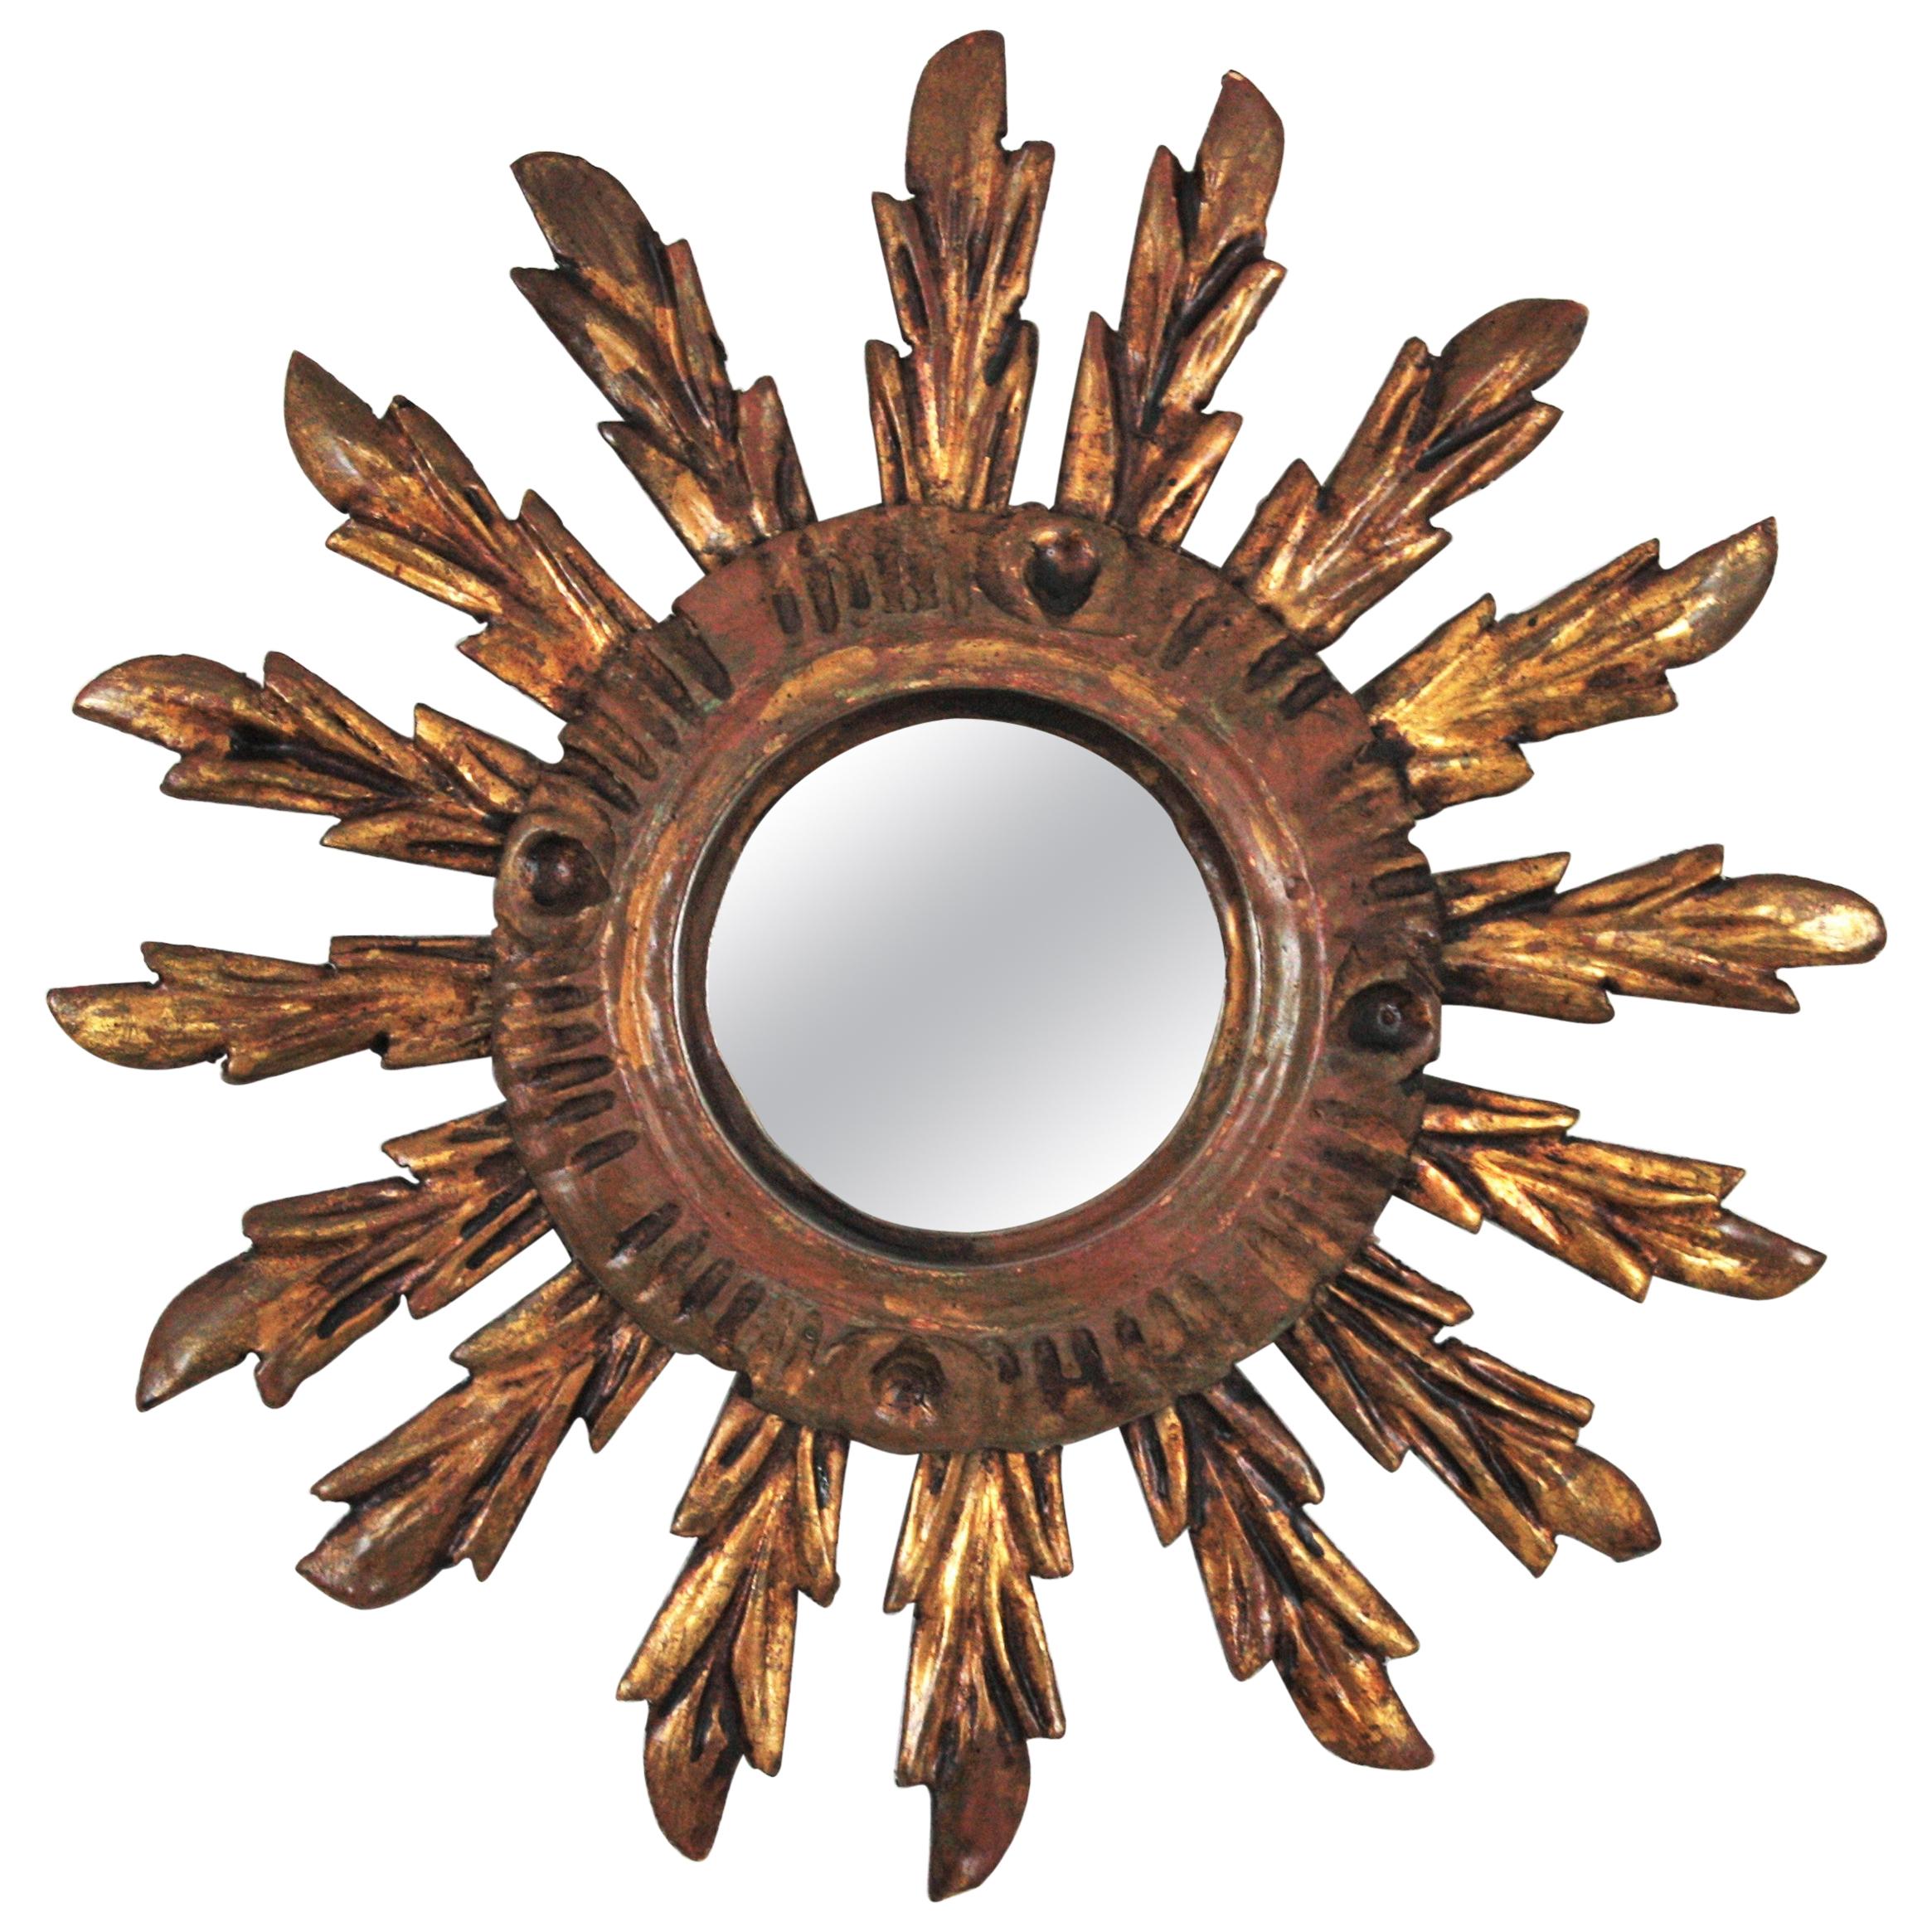 Sunburst Mirror in Small Scale, Baroque Style